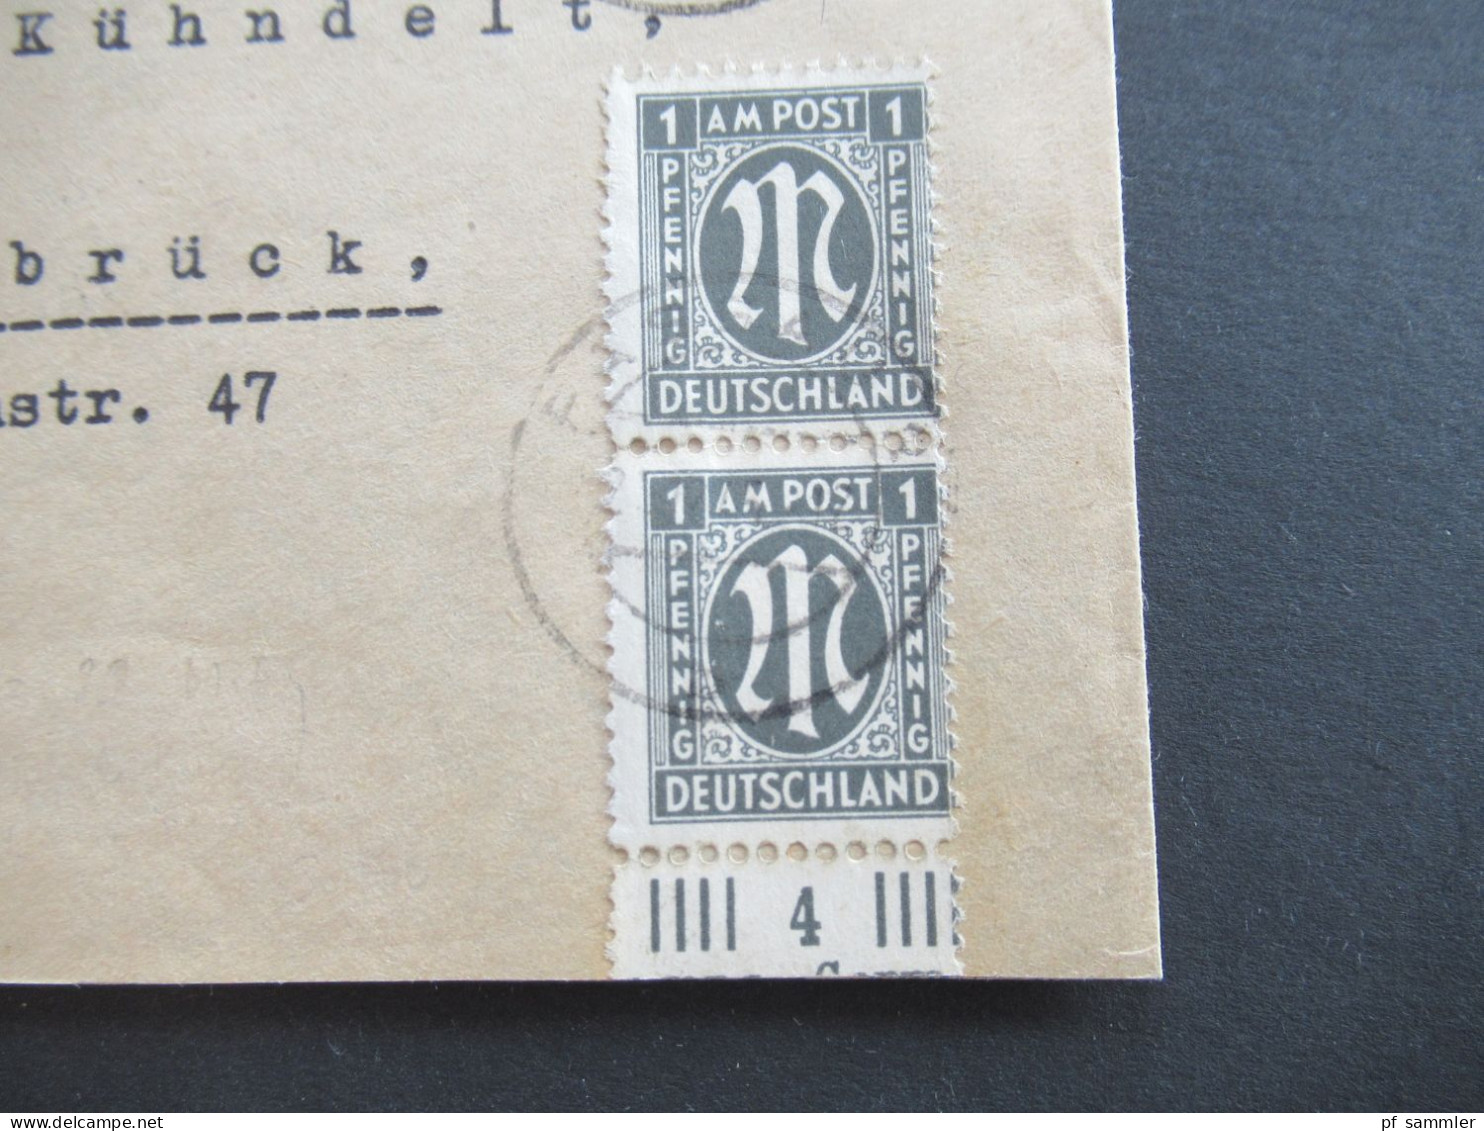 Am Post 21.12.1945 MiF Am. Druck / Deutscher Druck Nr.16 Unterrand Einschreiben Not R-Zettel Passau 2 - Osnabrück - Storia Postale